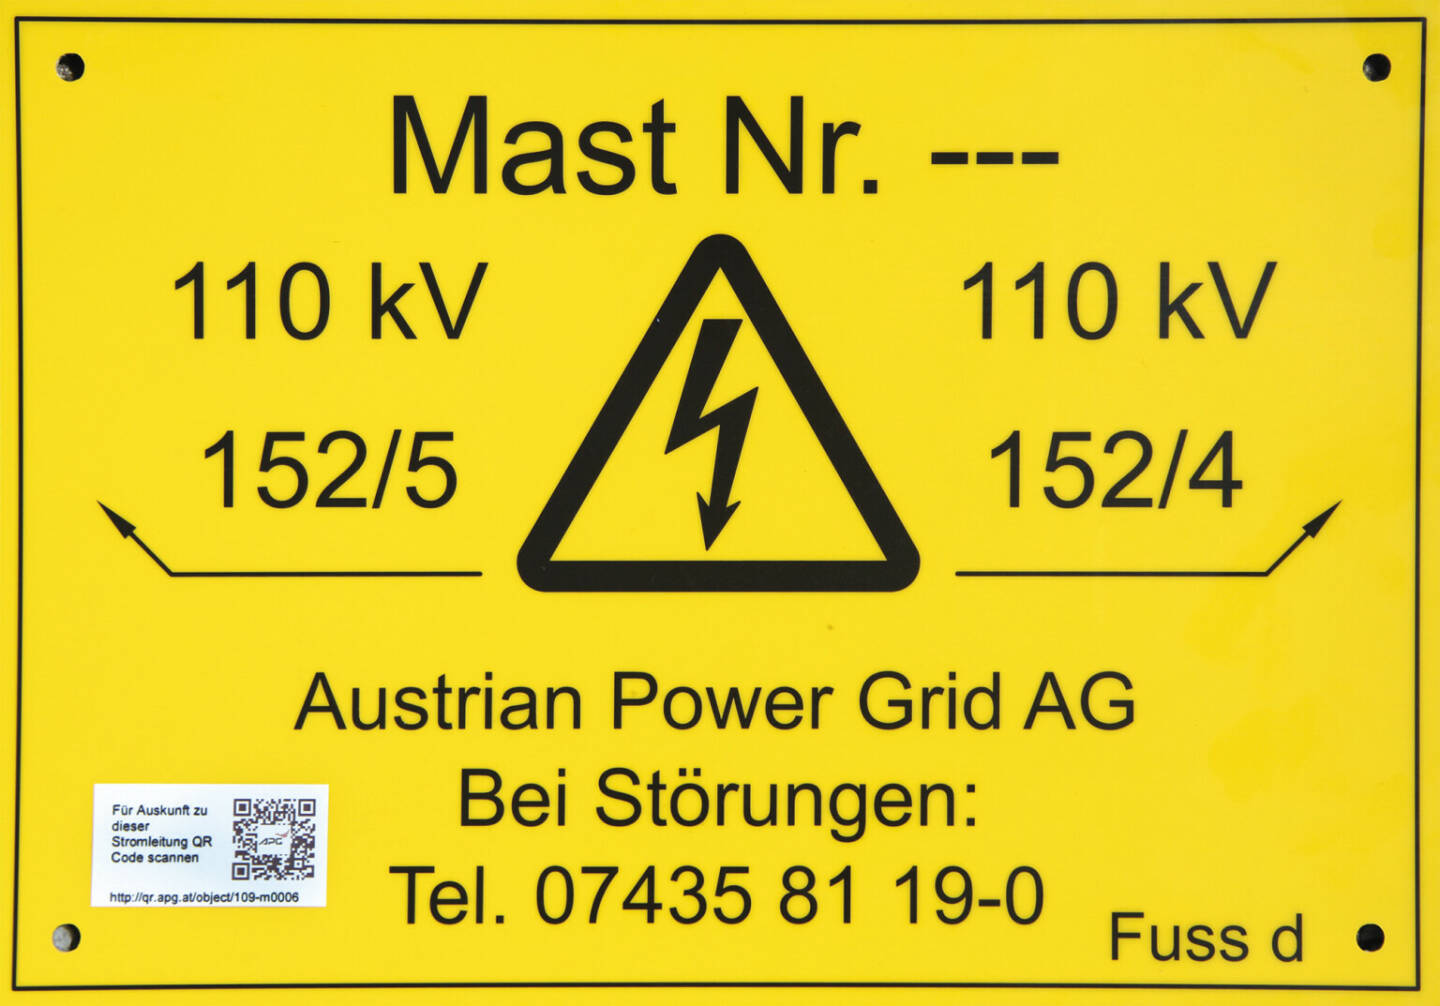 Austrian Power Grid AG: Mit Idee Strommasten mit QR-Codes auszustatten, holt APG den TÜV-Wissenschaftspreis in der Kategorie Unternehmen, APG hat 2019 alle 12.000 Masten in Österreich mit QR-Codes ausgestattet. Ein Notfall kann so schneller gemeldet werden.; Credit: APG